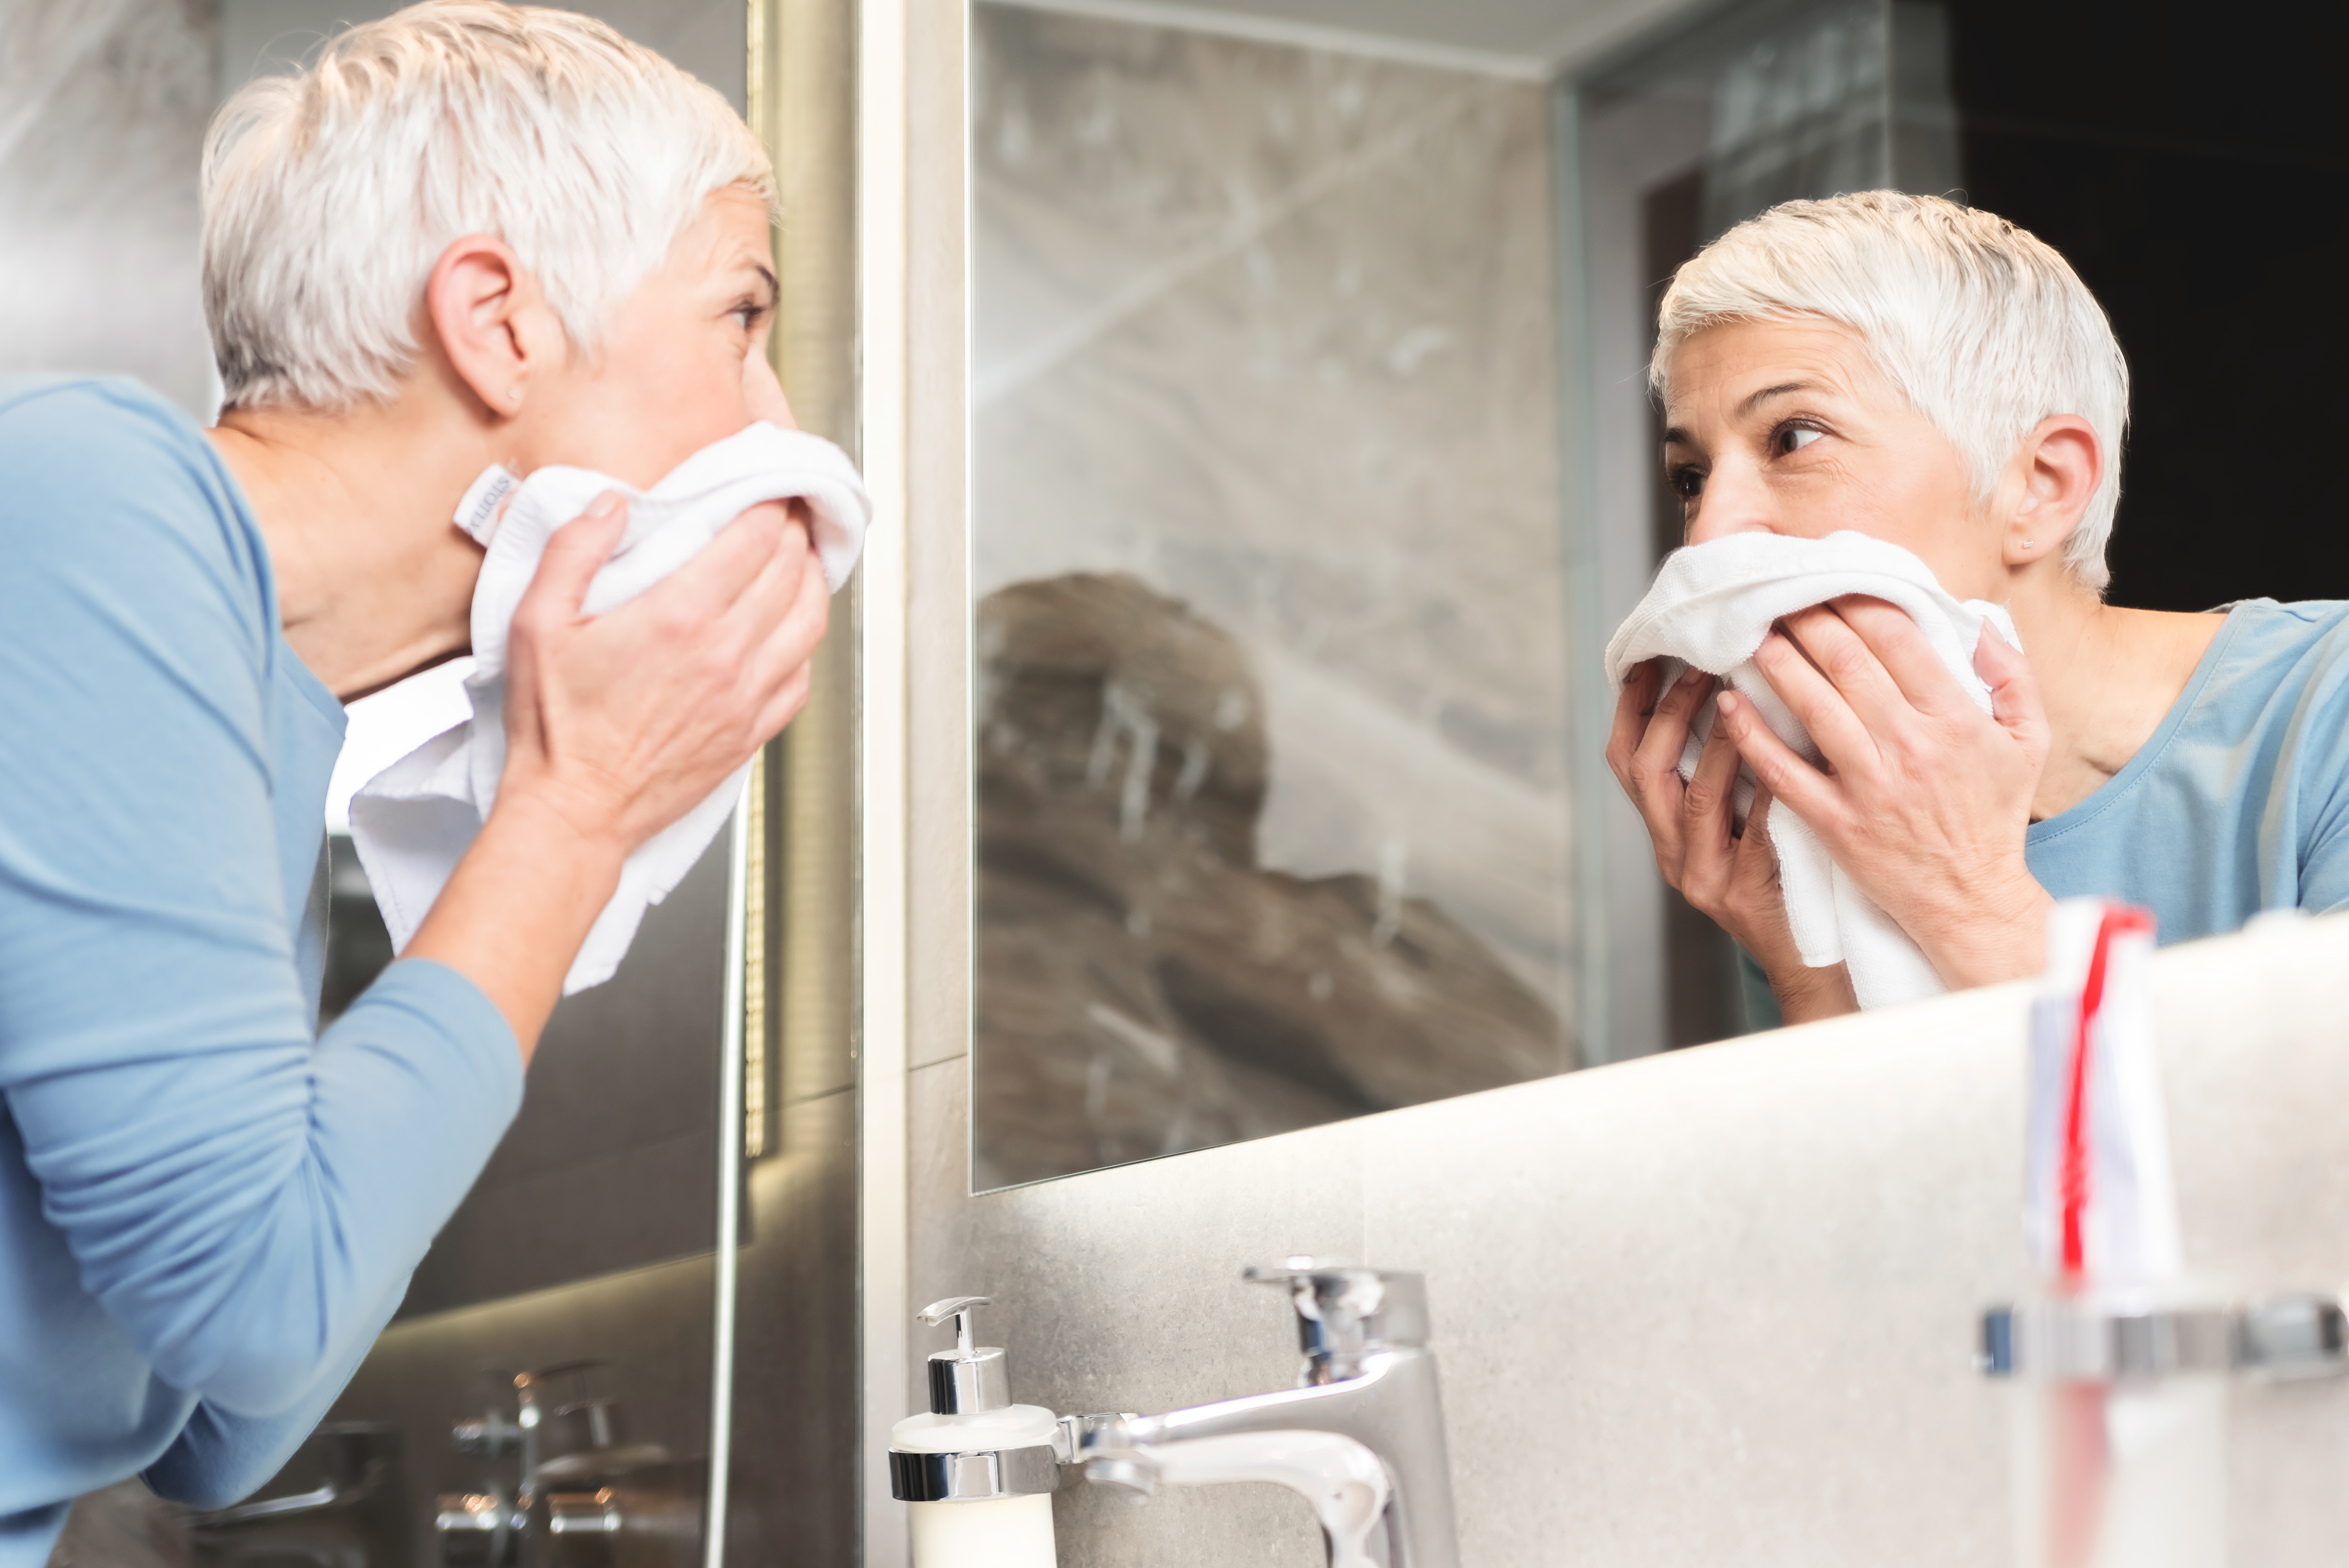 Une emme aux cheveux gris et courts s'essuyant le visage | Source : Shutterstock